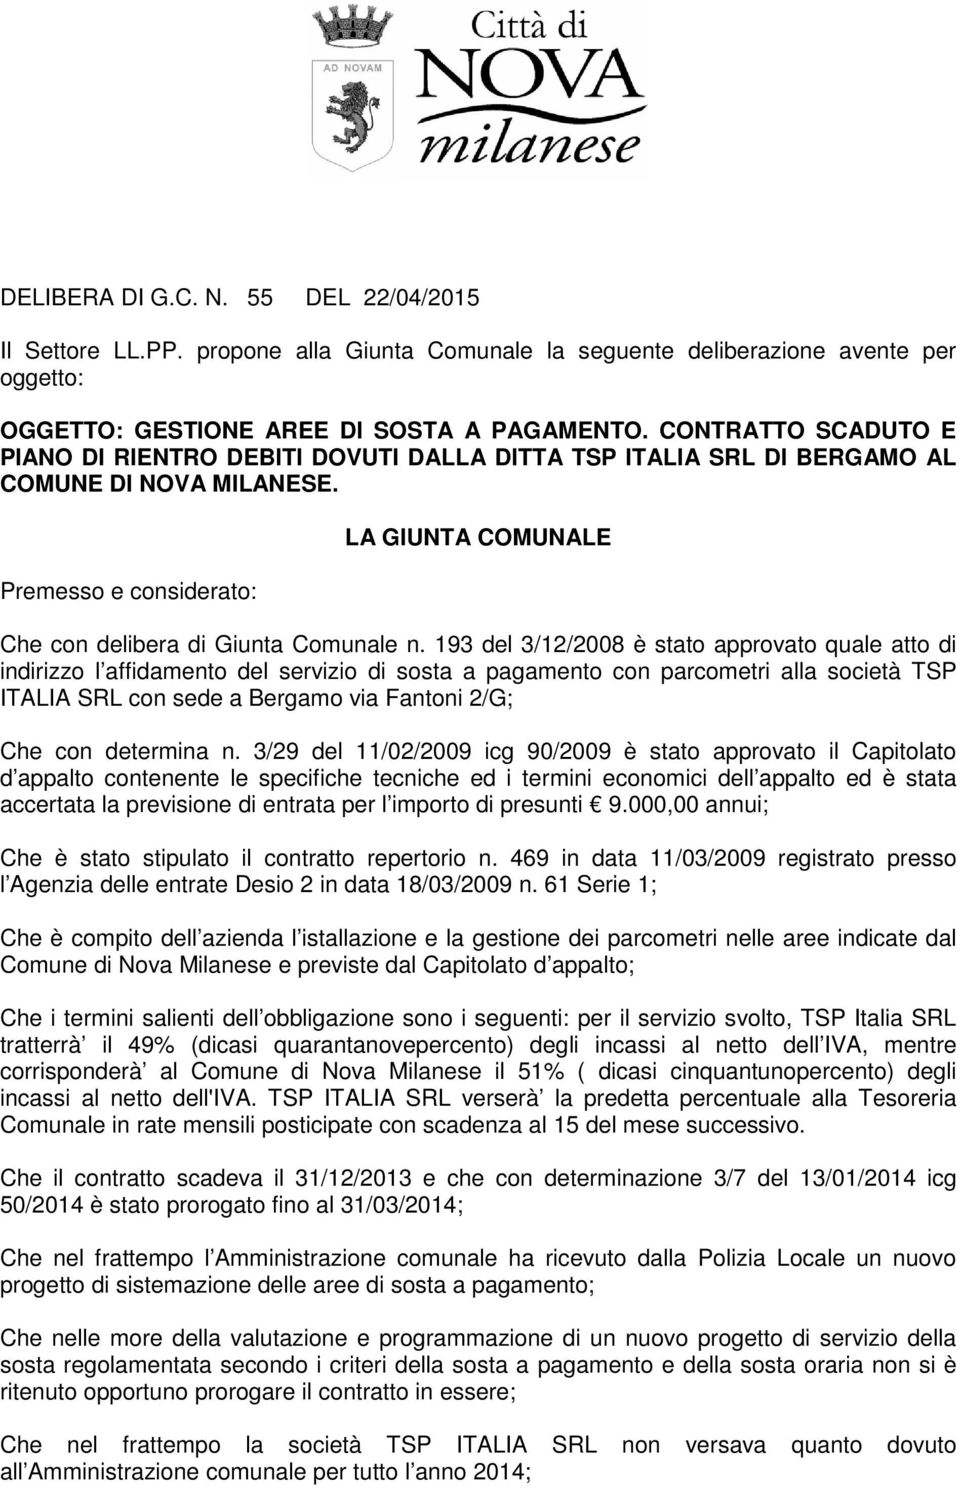 193 del 3/12/2008 è stato approvato quale atto di indirizzo l affidamento del servizio di sosta a pagamento con parcometri alla società TSP ITALIA SRL con sede a Bergamo via Fantoni 2/G; Che con